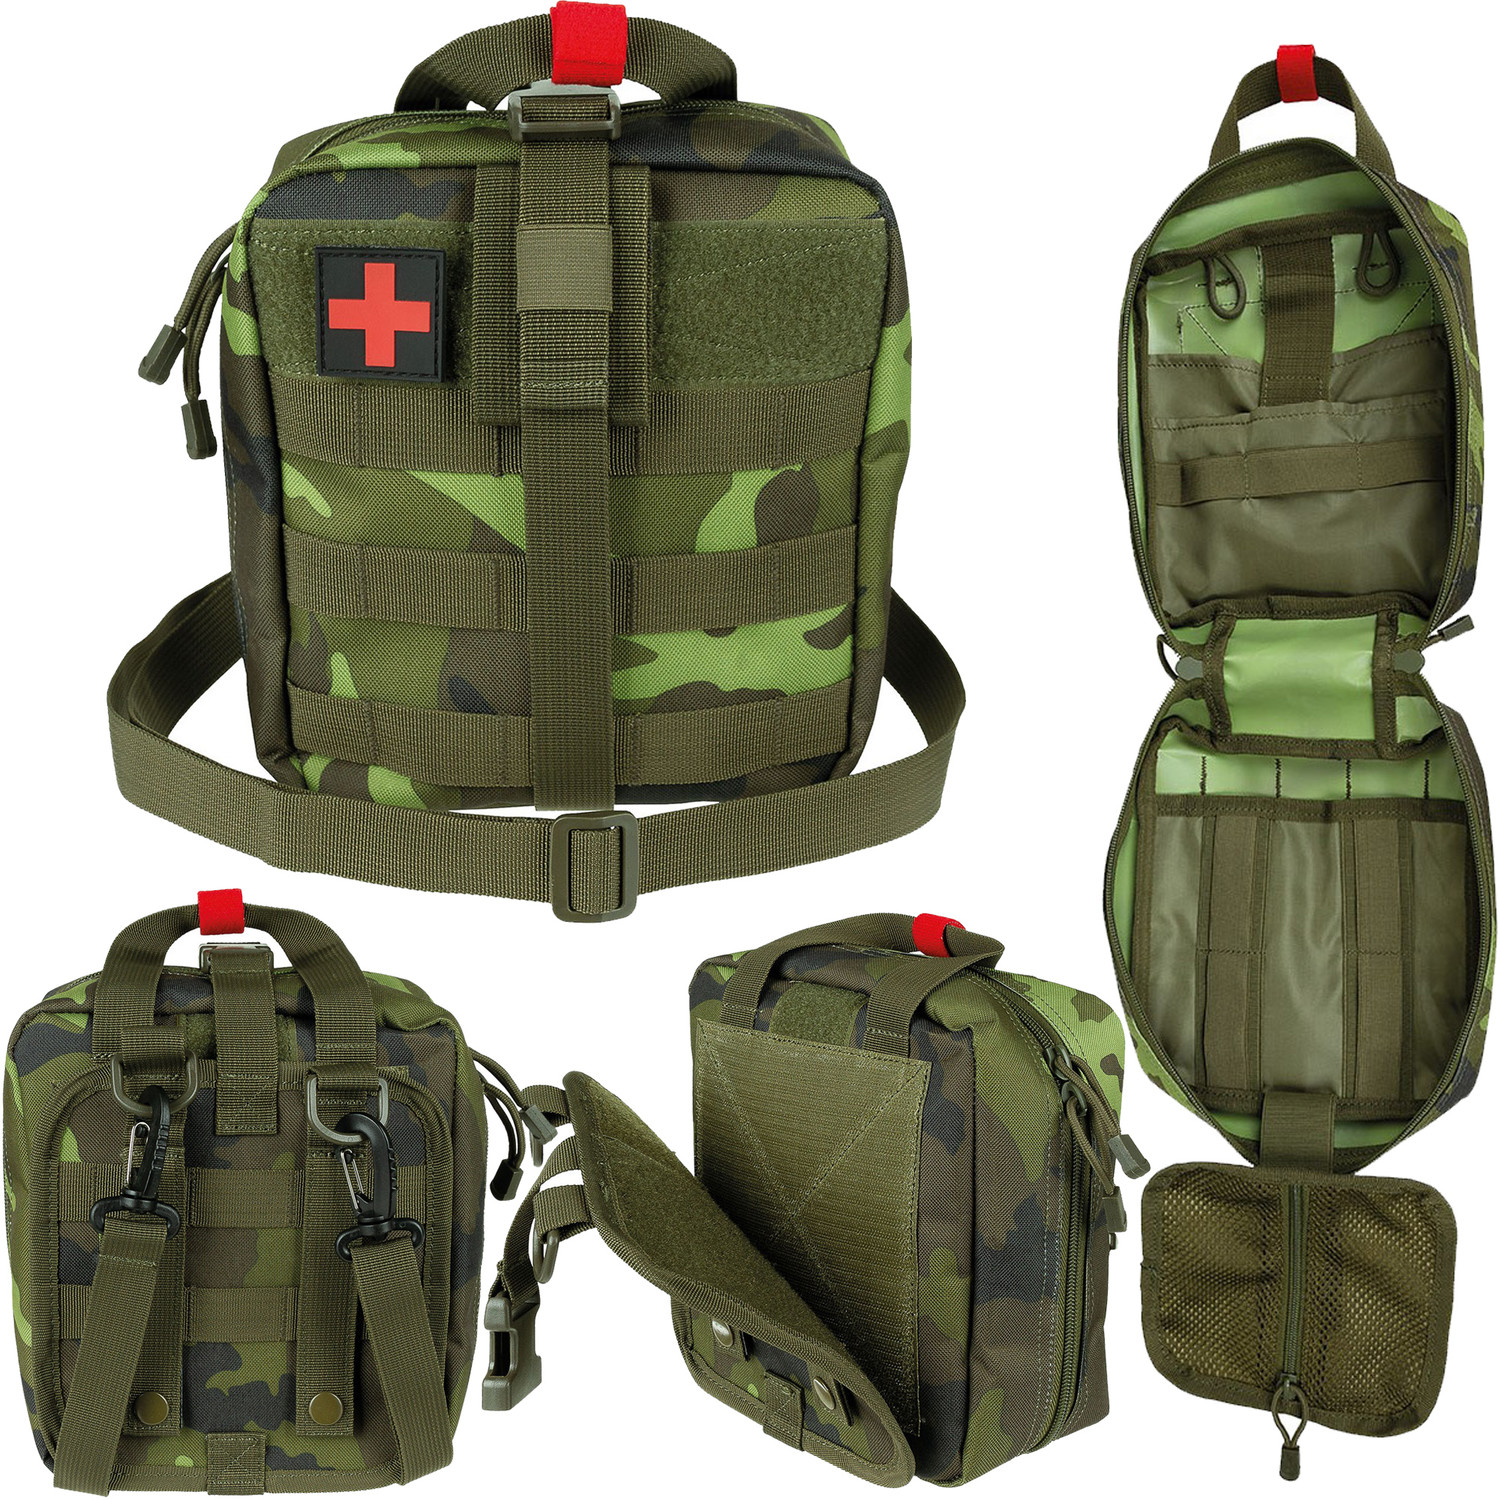 Erste Hilfe Tasche mit Molle, Reißverschluss und Klett - Groß: M95 CZ Tarn